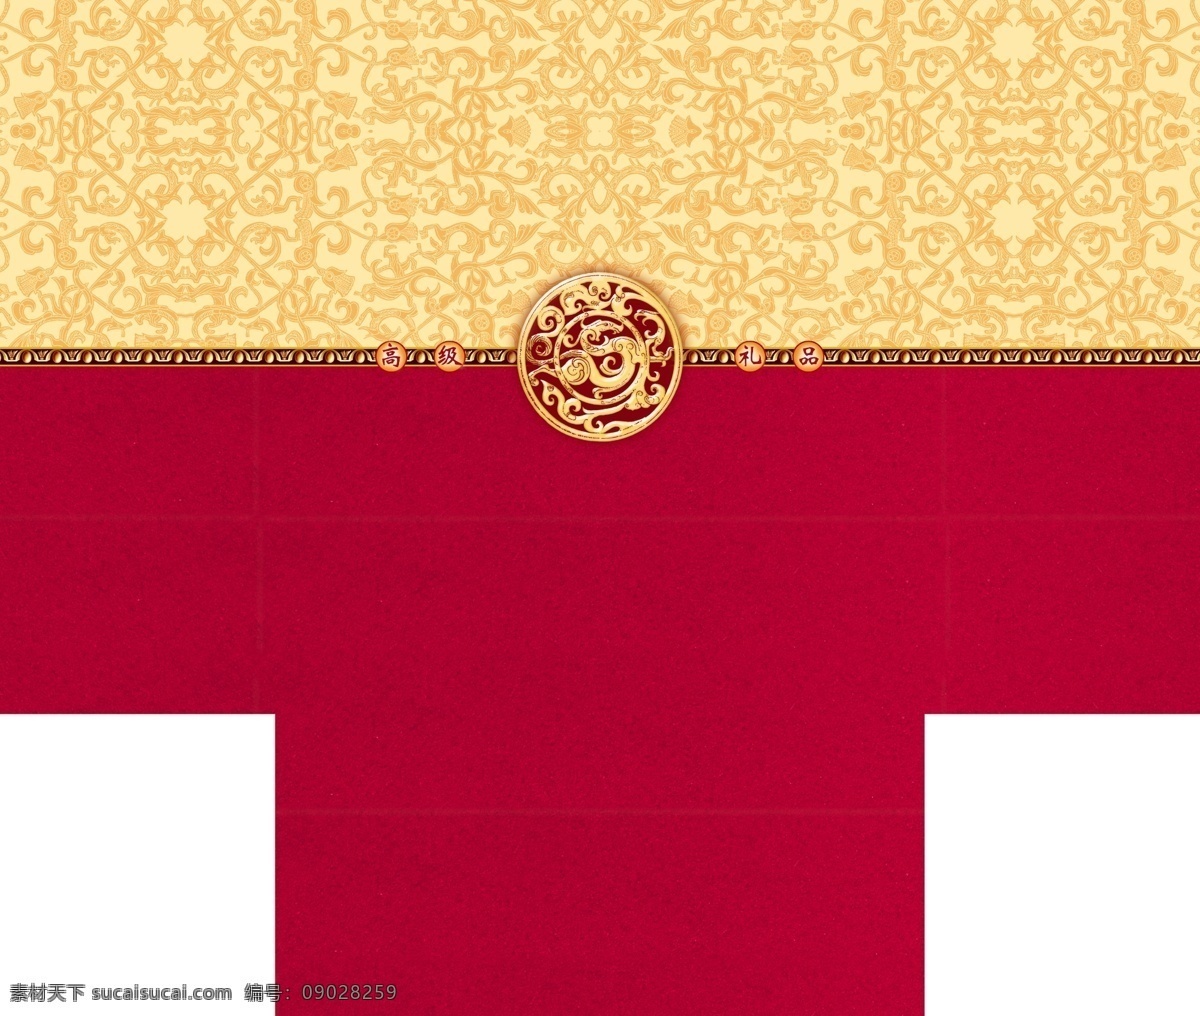 高级礼品盒 平面图 传统图案 中国风包装 龙纹 精品盒设计 龙 青龙 包装设计 黑色